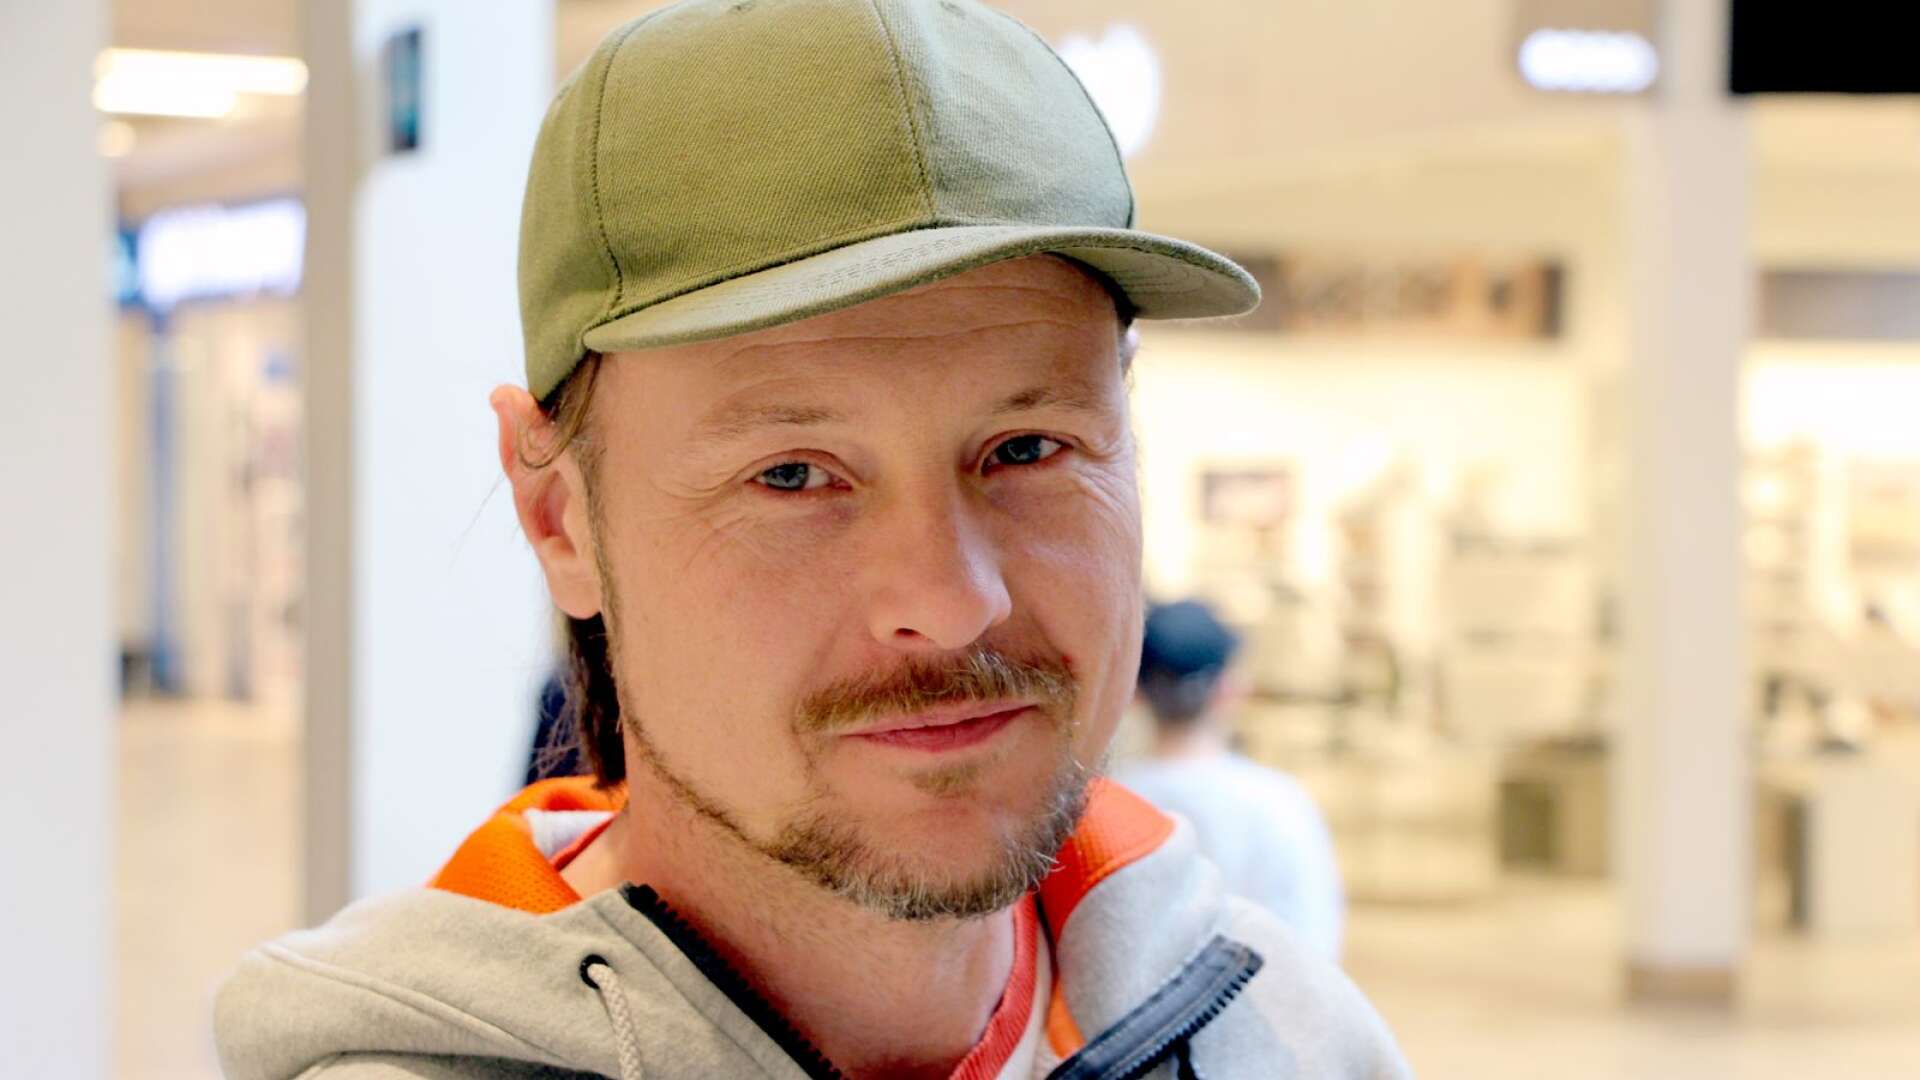 Fredrik Seeberg, 43, egenföretagare, Slottsbron:
Nej, jag har inte bestämt mig än. Jag har börjat reflektera över det men kommer nog inte att rösta.